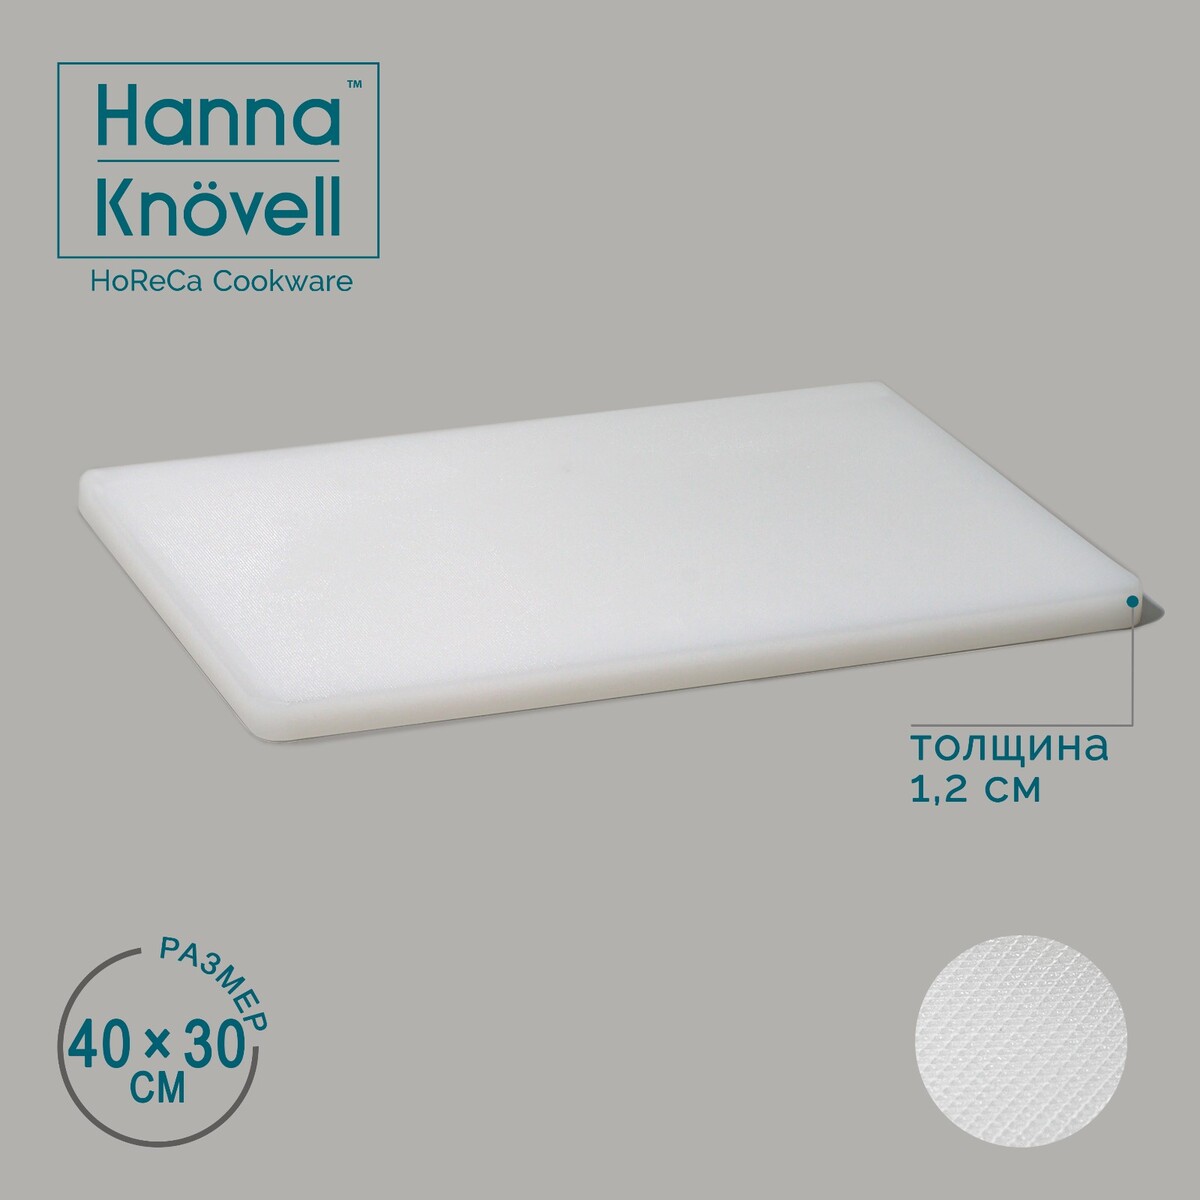 Доска профессиональная разделочная hanna knövell, 40×30×1,2 см, цвет белый